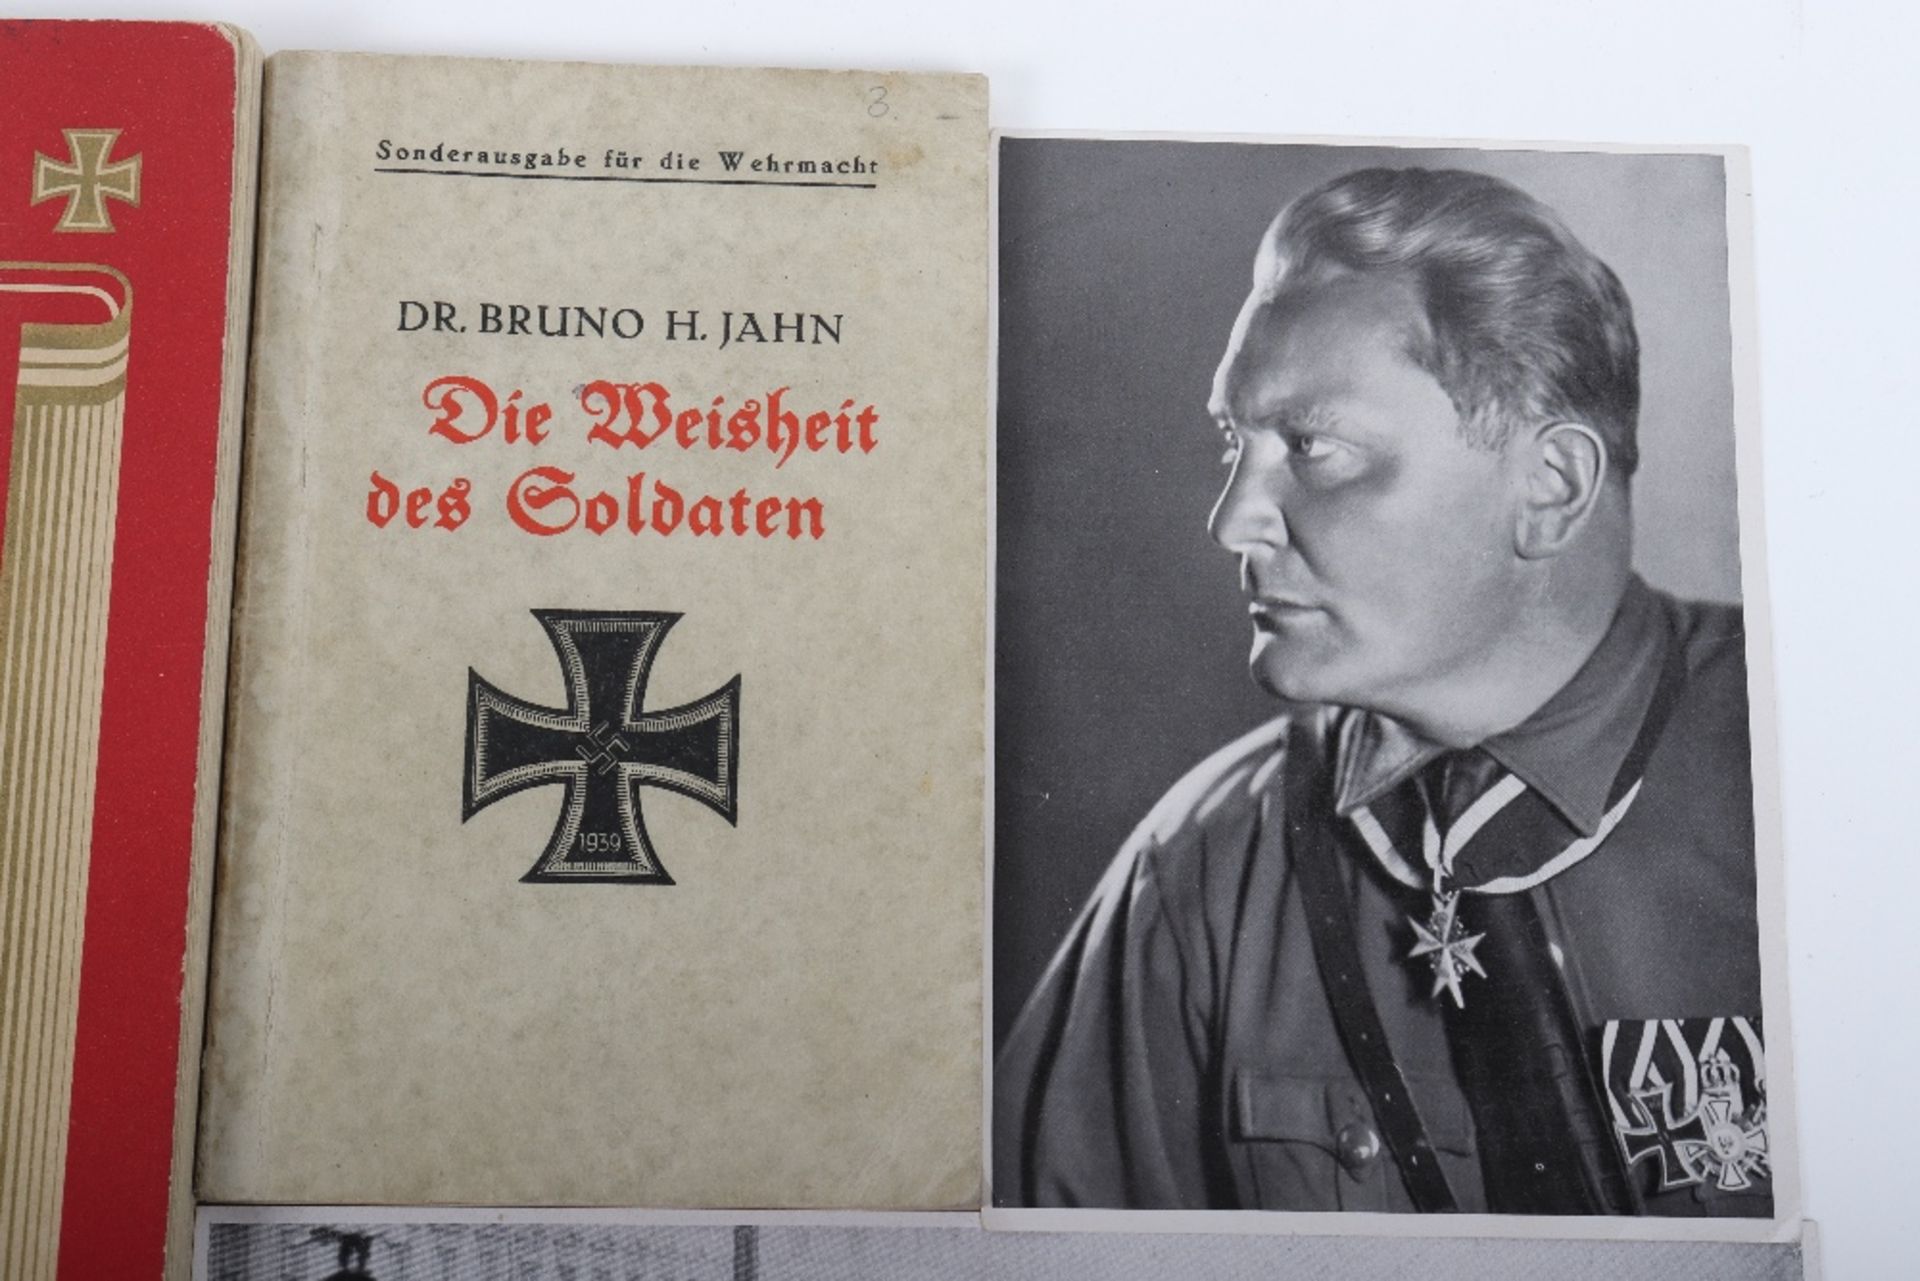 Third Reich Period Publication “Deutschlands Wehrmacht” - Image 4 of 6